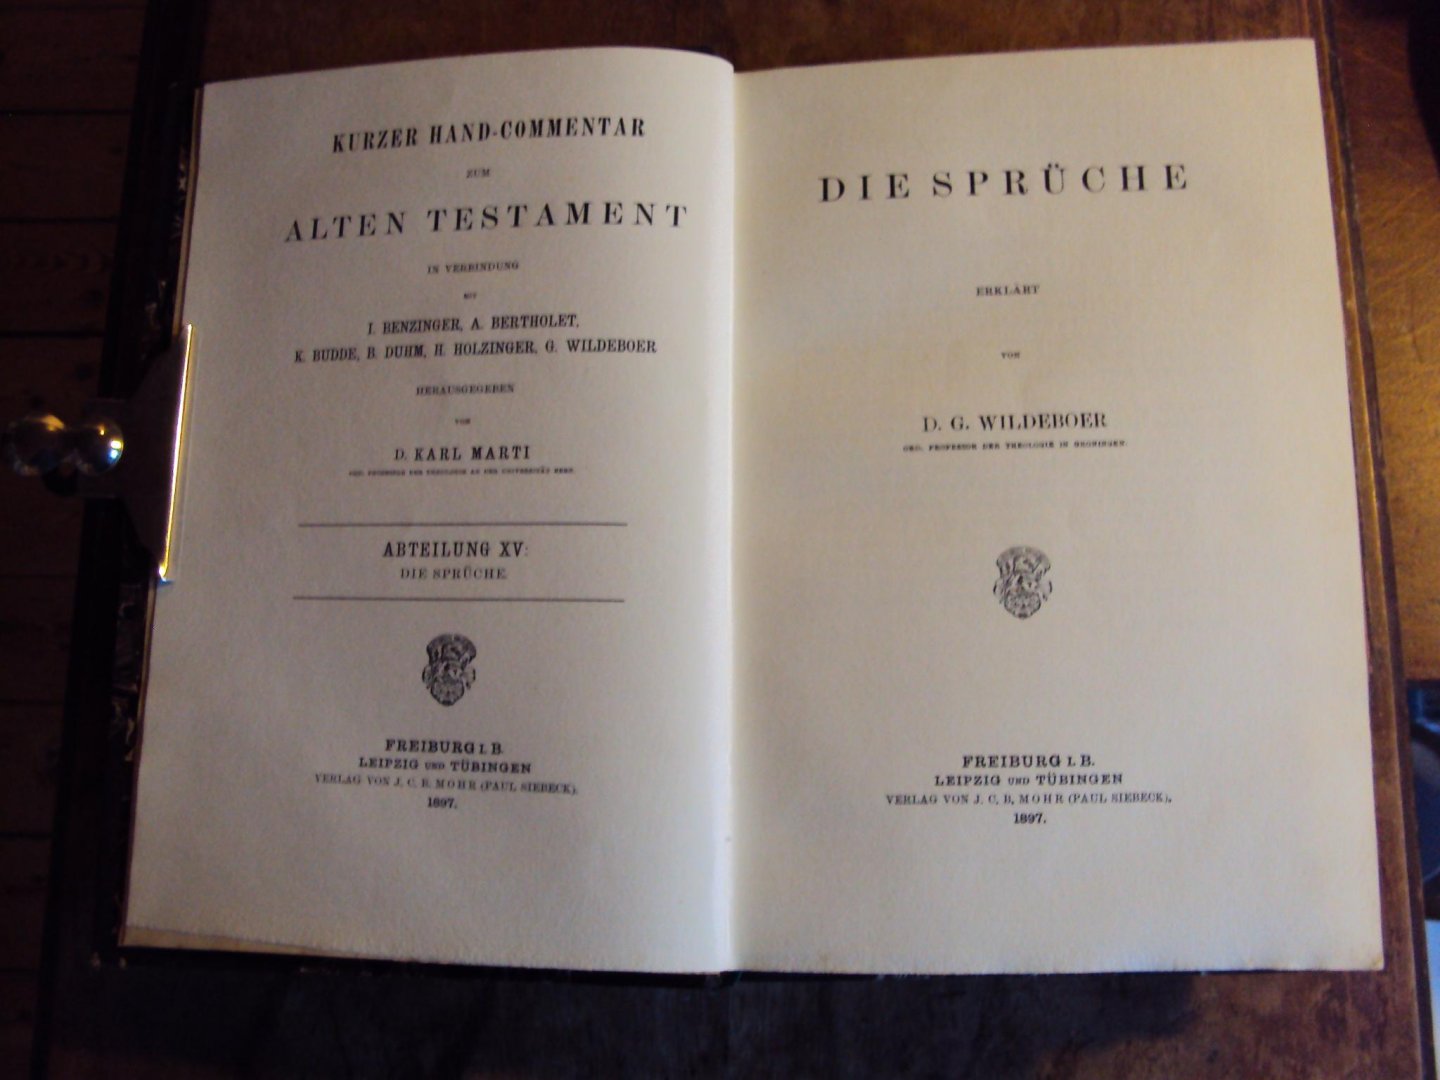 Wildeboer, D.G. - Die Sprüche. Kurzer Hand-Commentar zum Alten Testament, Abteilung XV